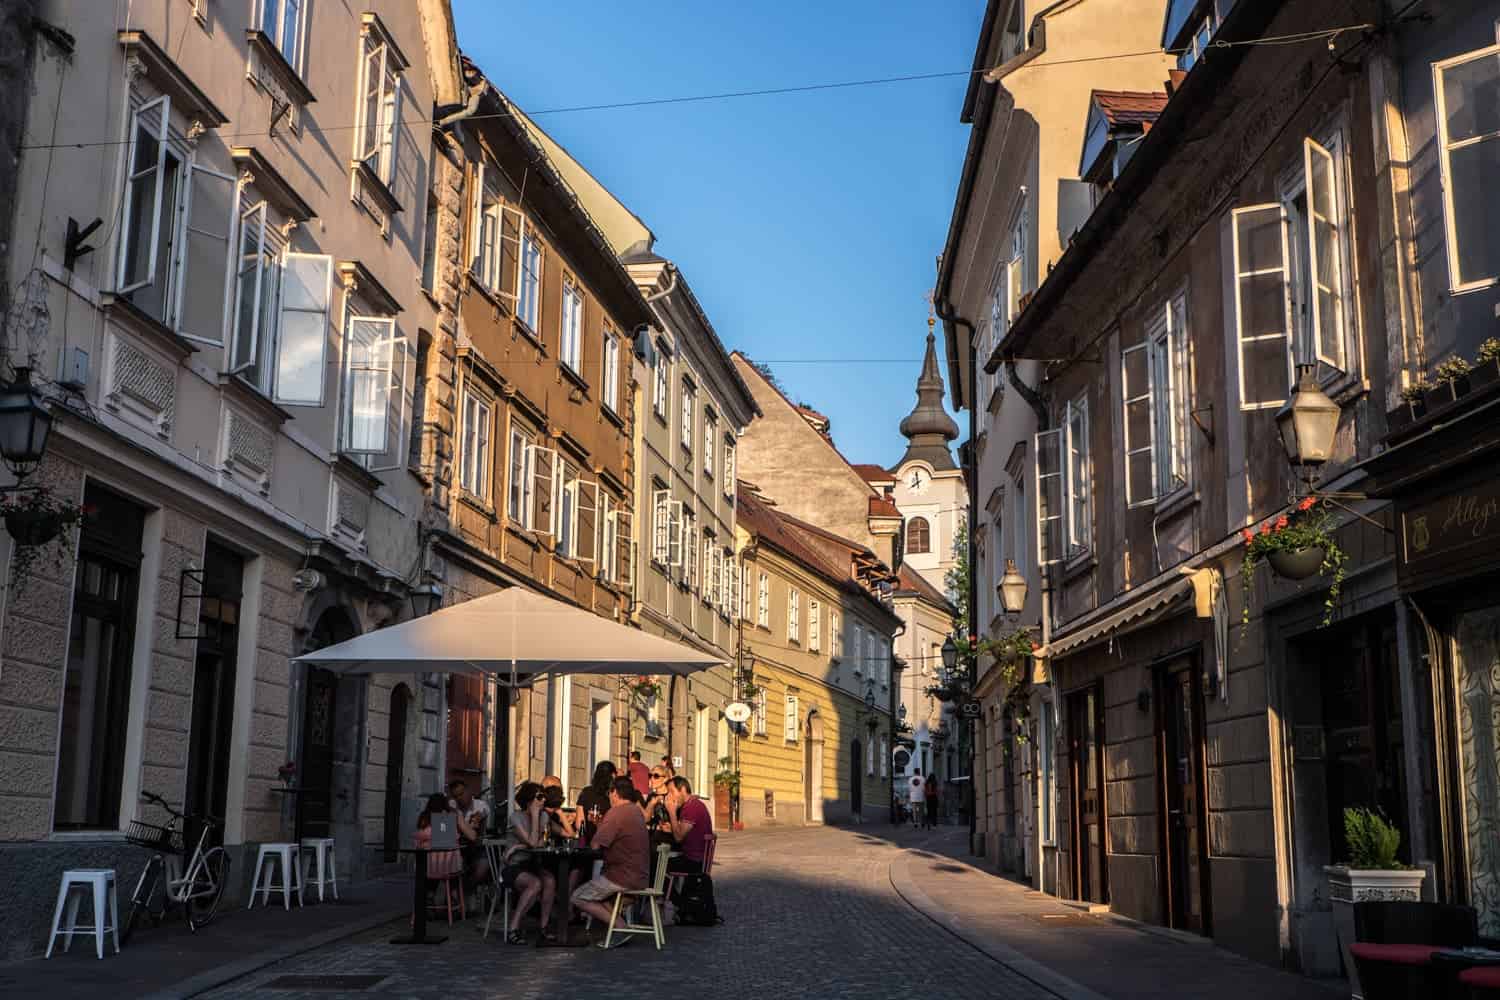 Dining alfresco in Ljubljana Old Town streets